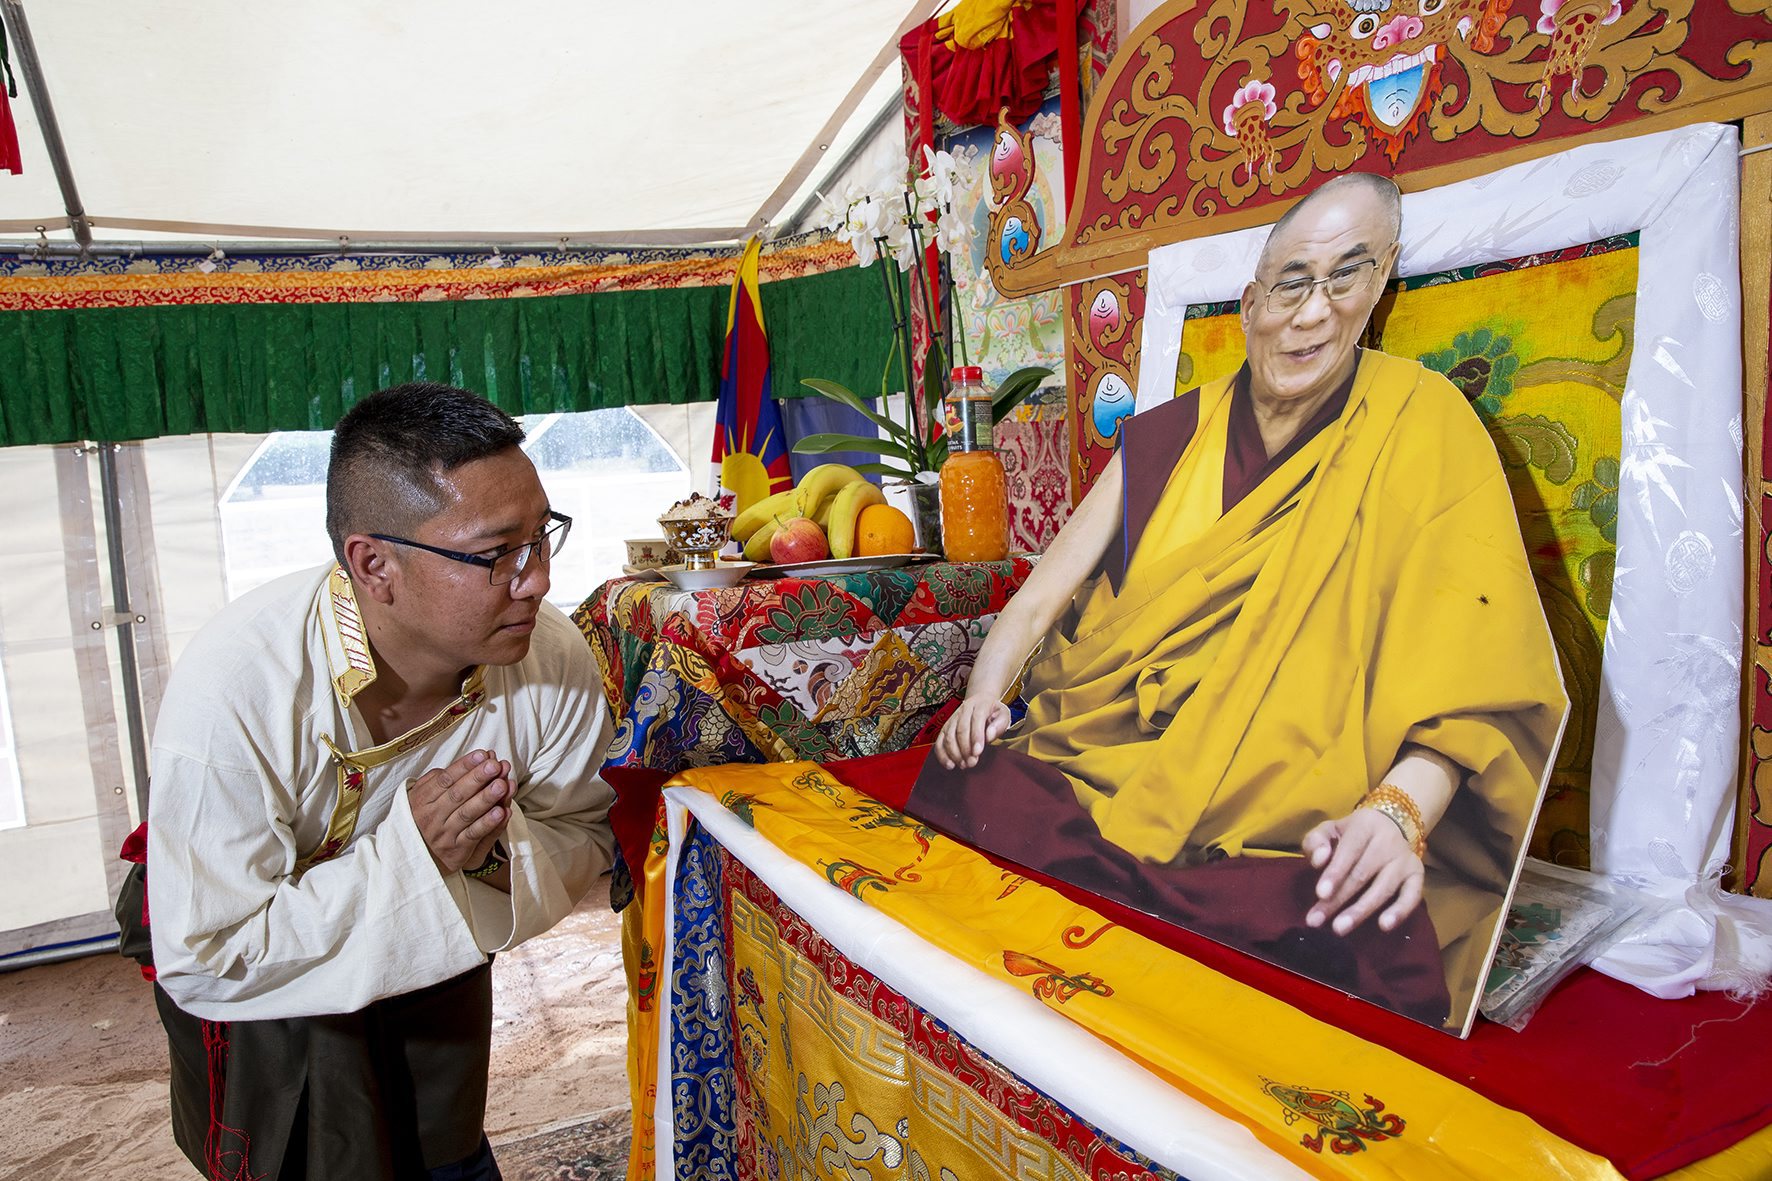 Les Tibétains du canton de Neuchâtel (ici son président Gawa Ngodrup) célébraient l'anniversaire du dalaï-lama samedi.